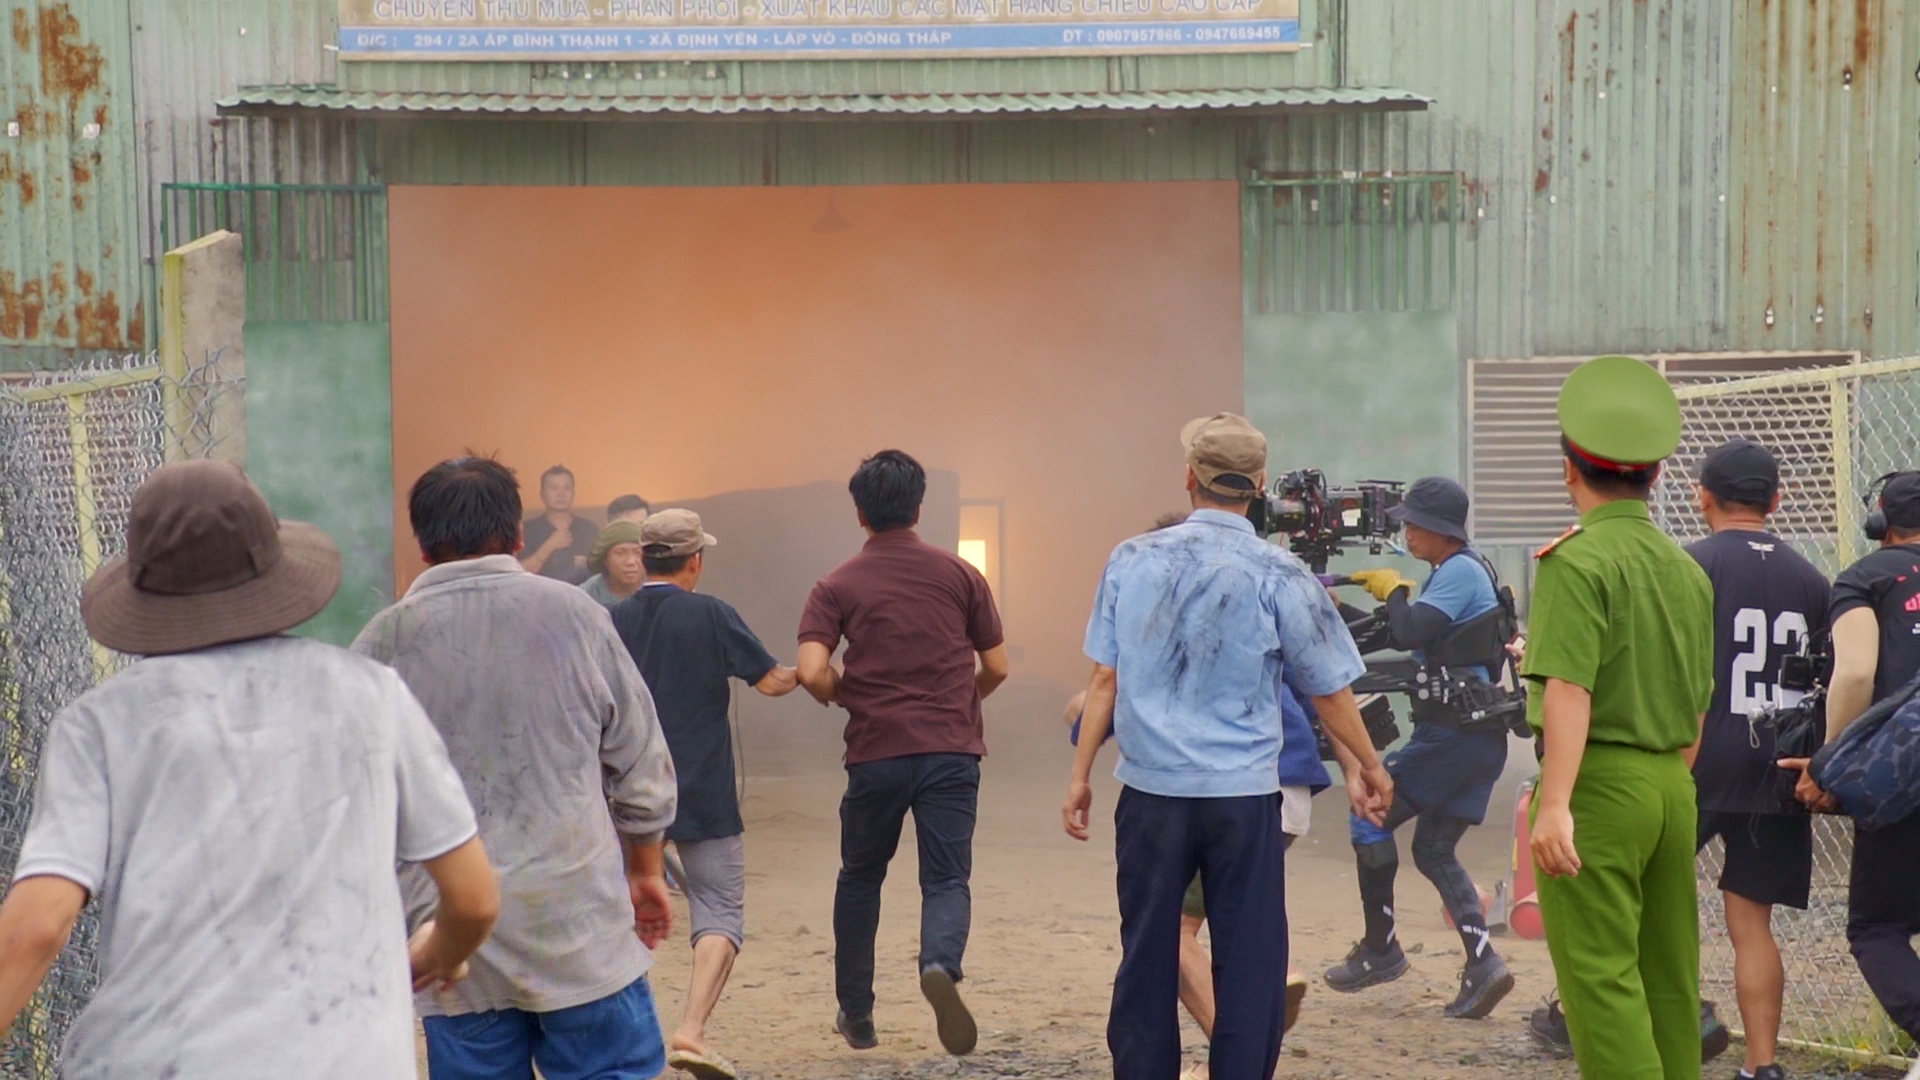 Khi cảnh cháy đang được quay hình, đạo diễn Lý Hải đã cho huy động 2 xe cứu hỏa túc trực và dặn dò chuẩn bị tâm lý cho ekip phim